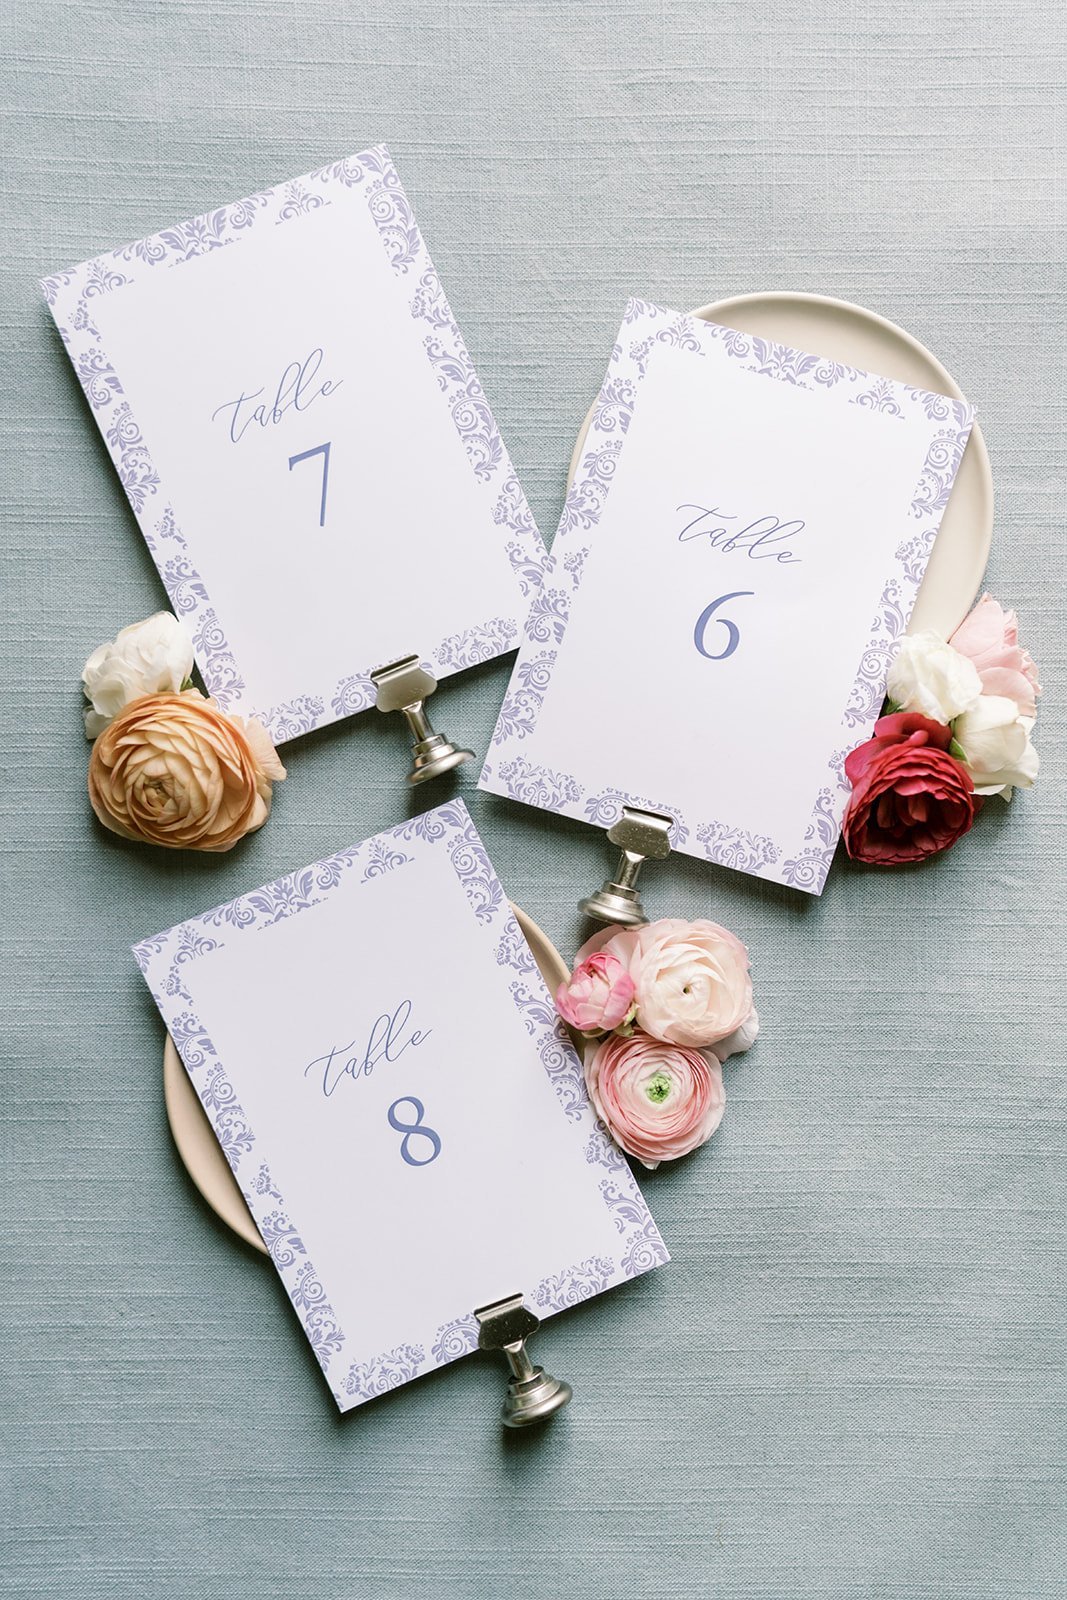 Peterloon Estates Cincinnati Wedding Planner Table Numbers.jpg